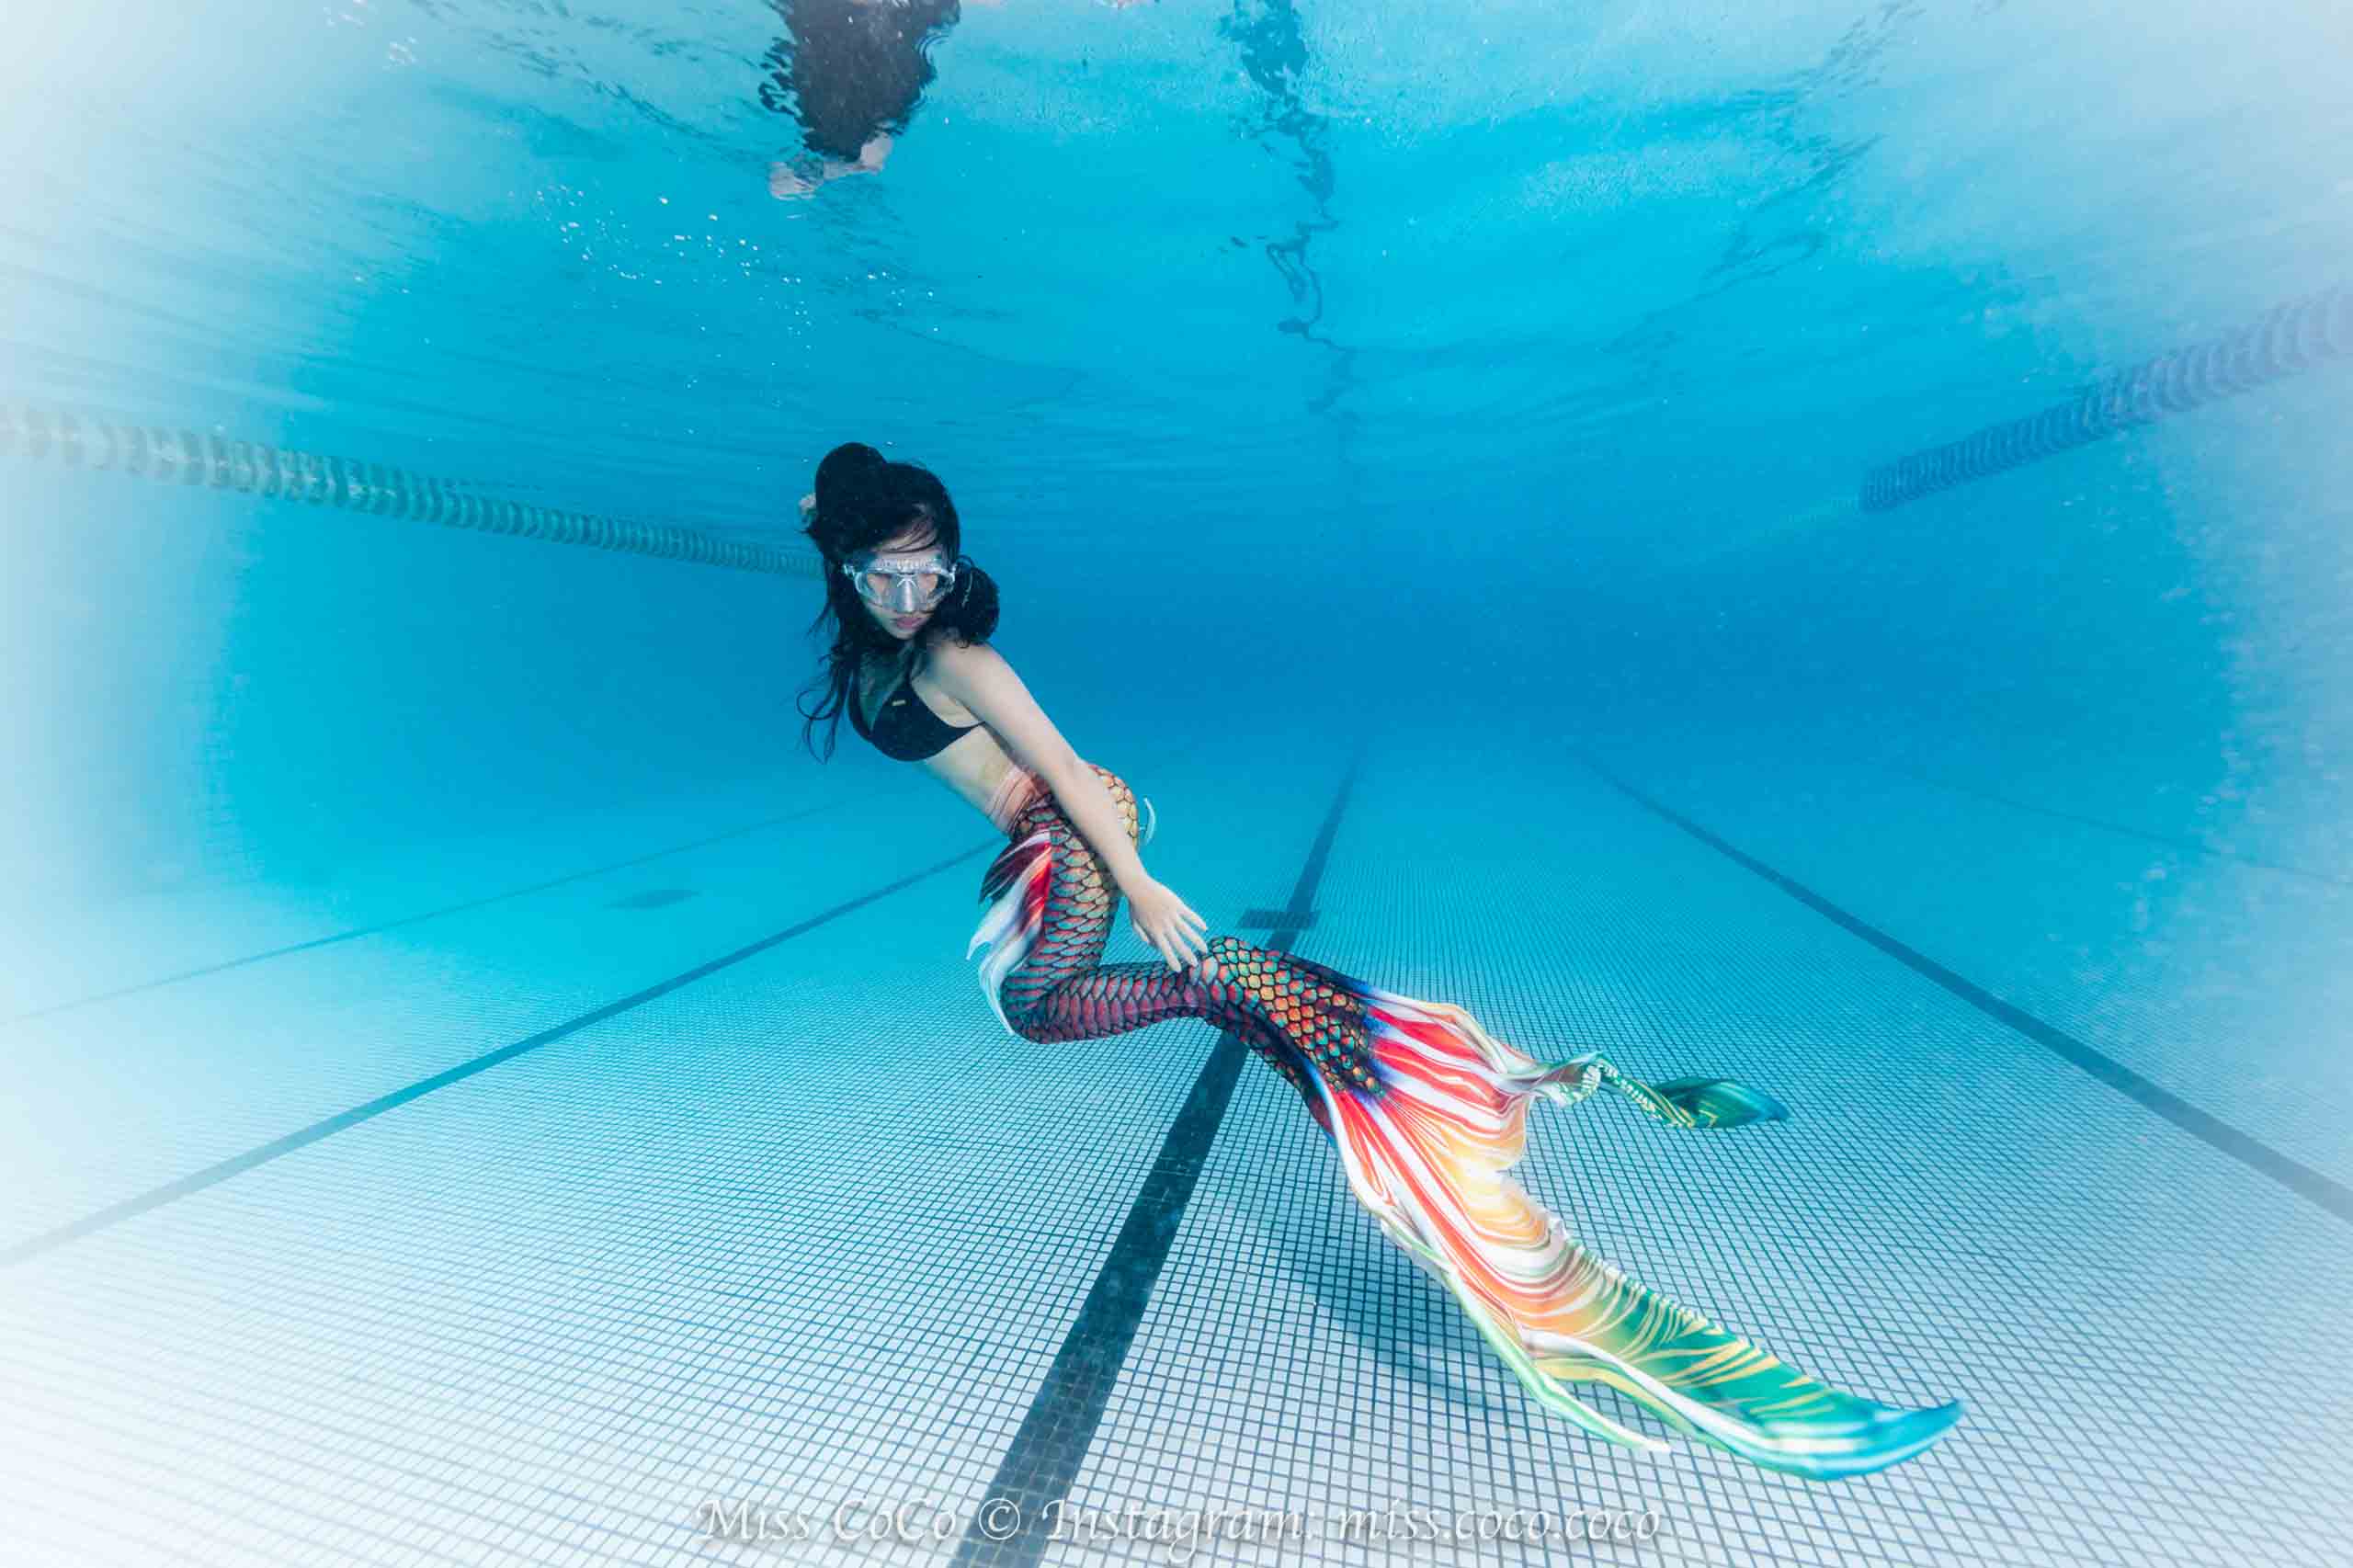 海裡見潛水俱樂部 水肺潛水 scubadiving 自由潛水 freediving padi 美人魚 mermaid 11